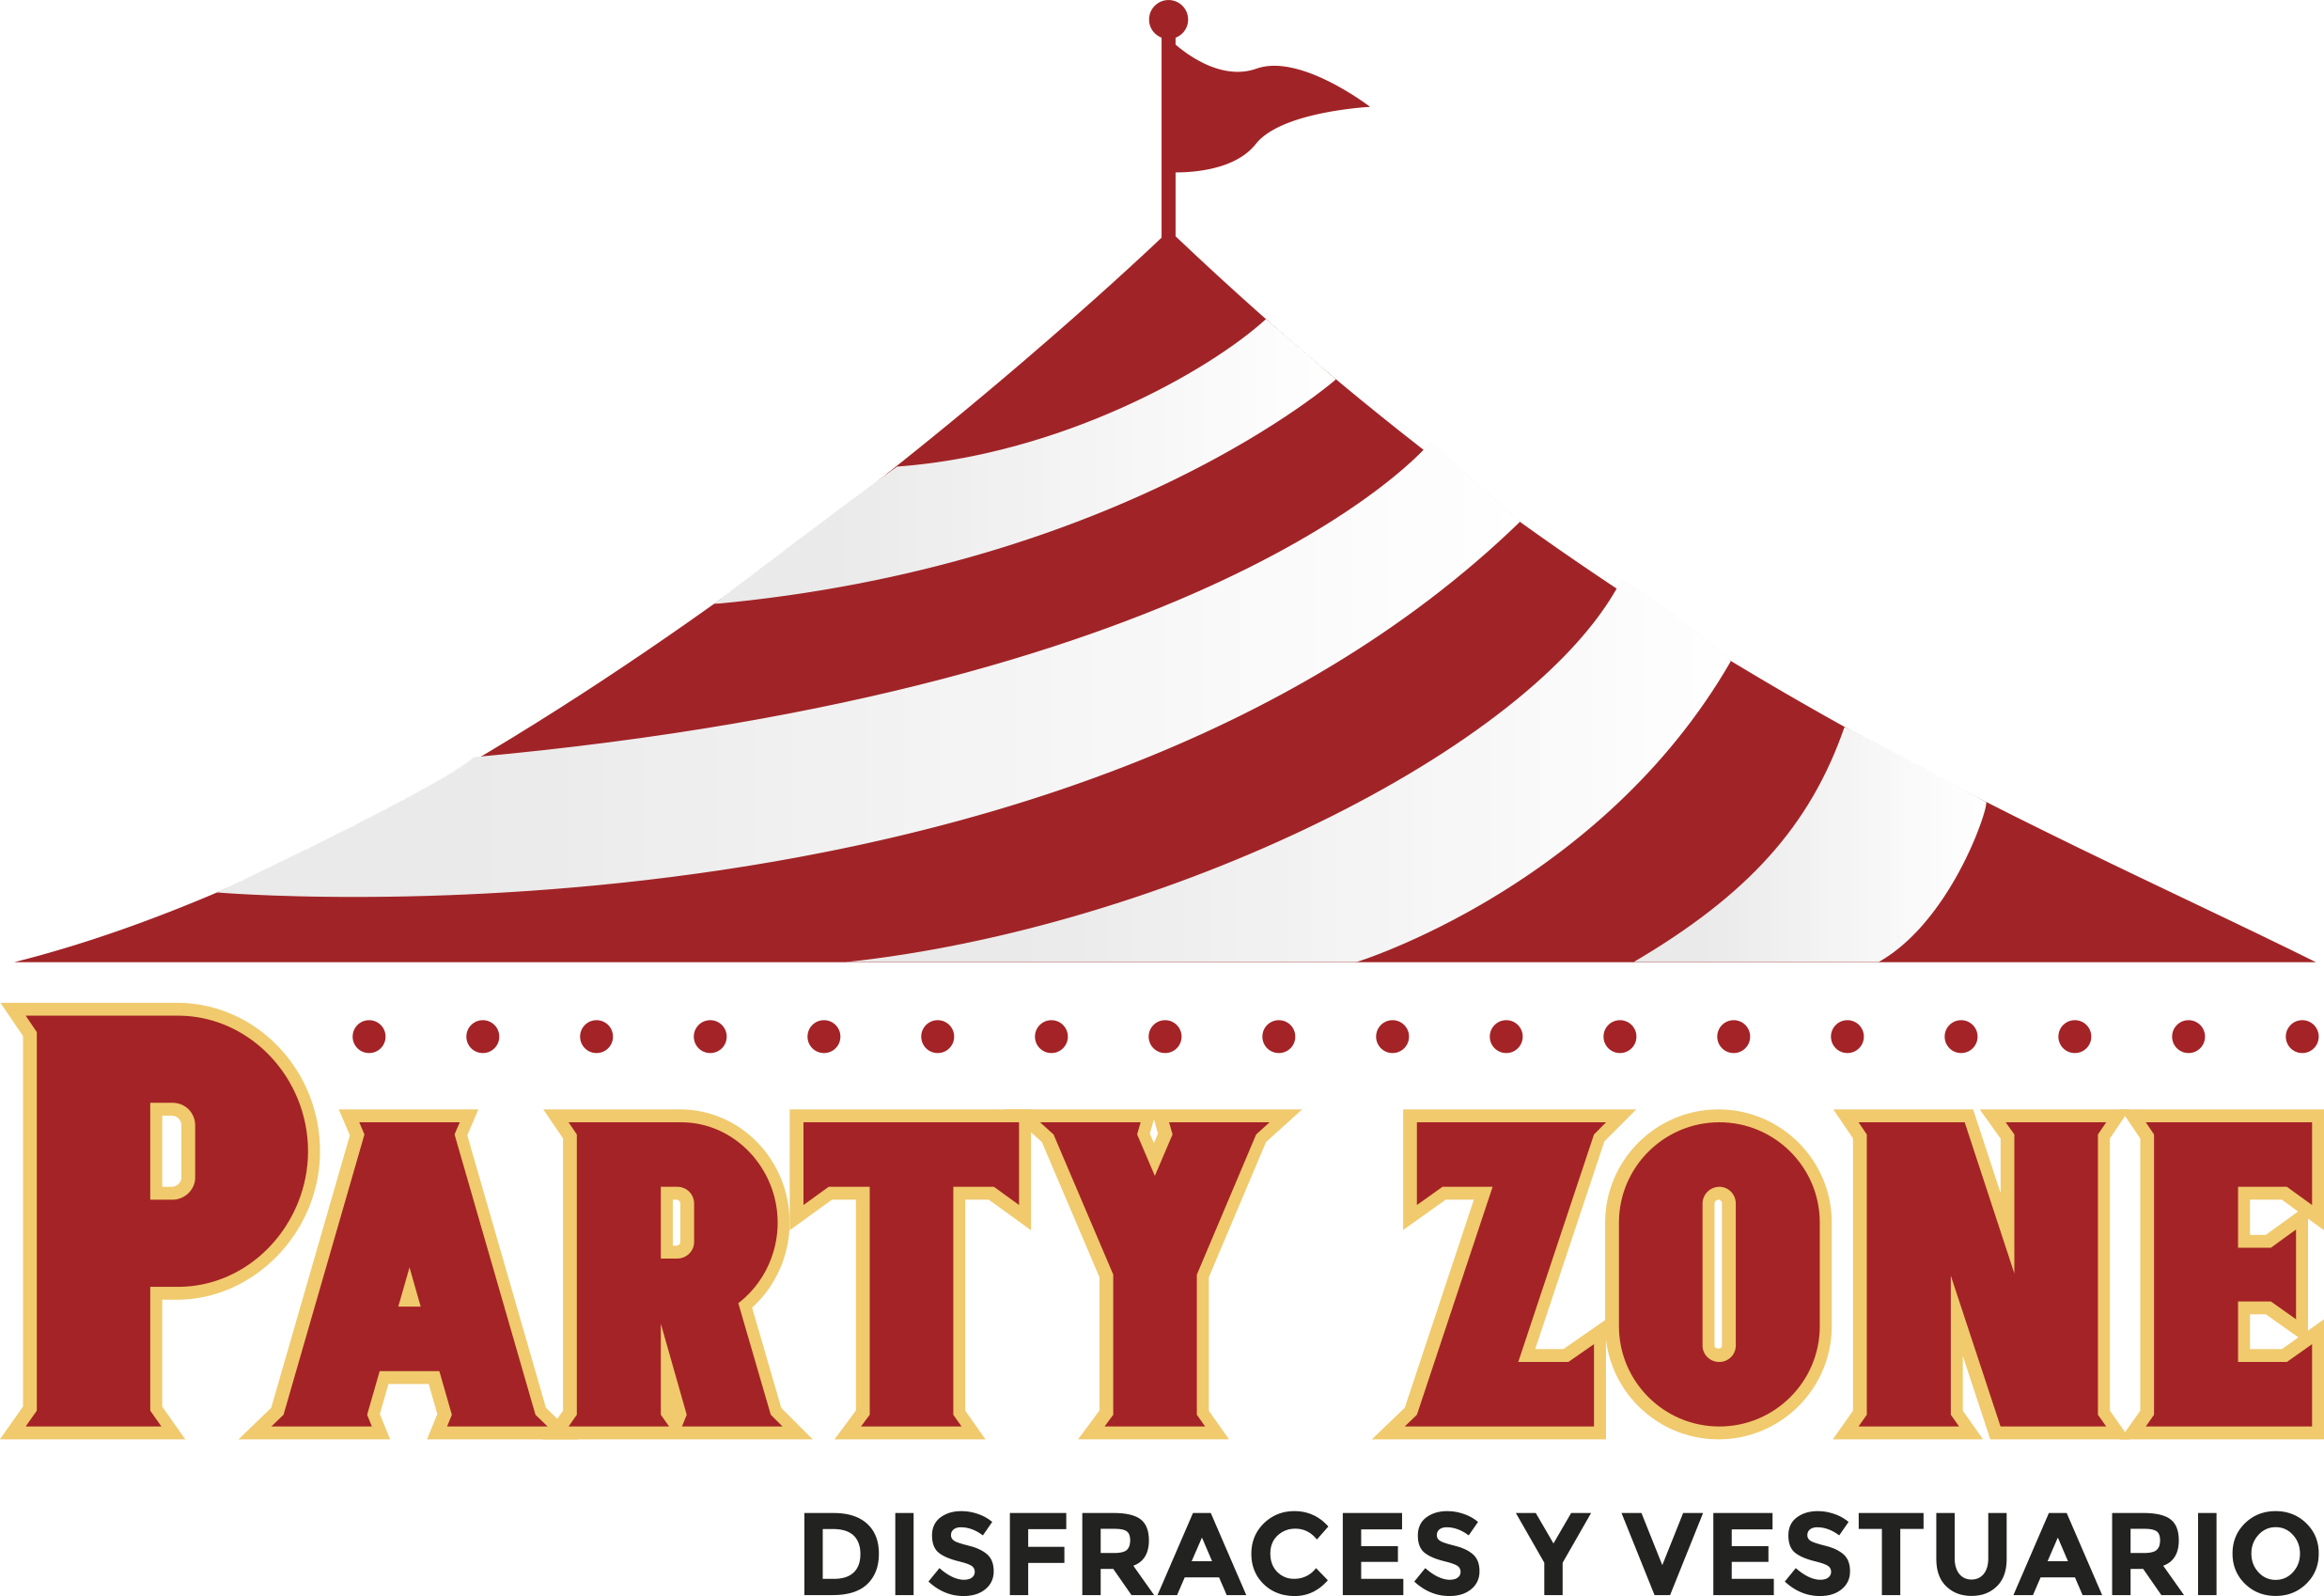 Disfraces y Vestuario Party Zone 